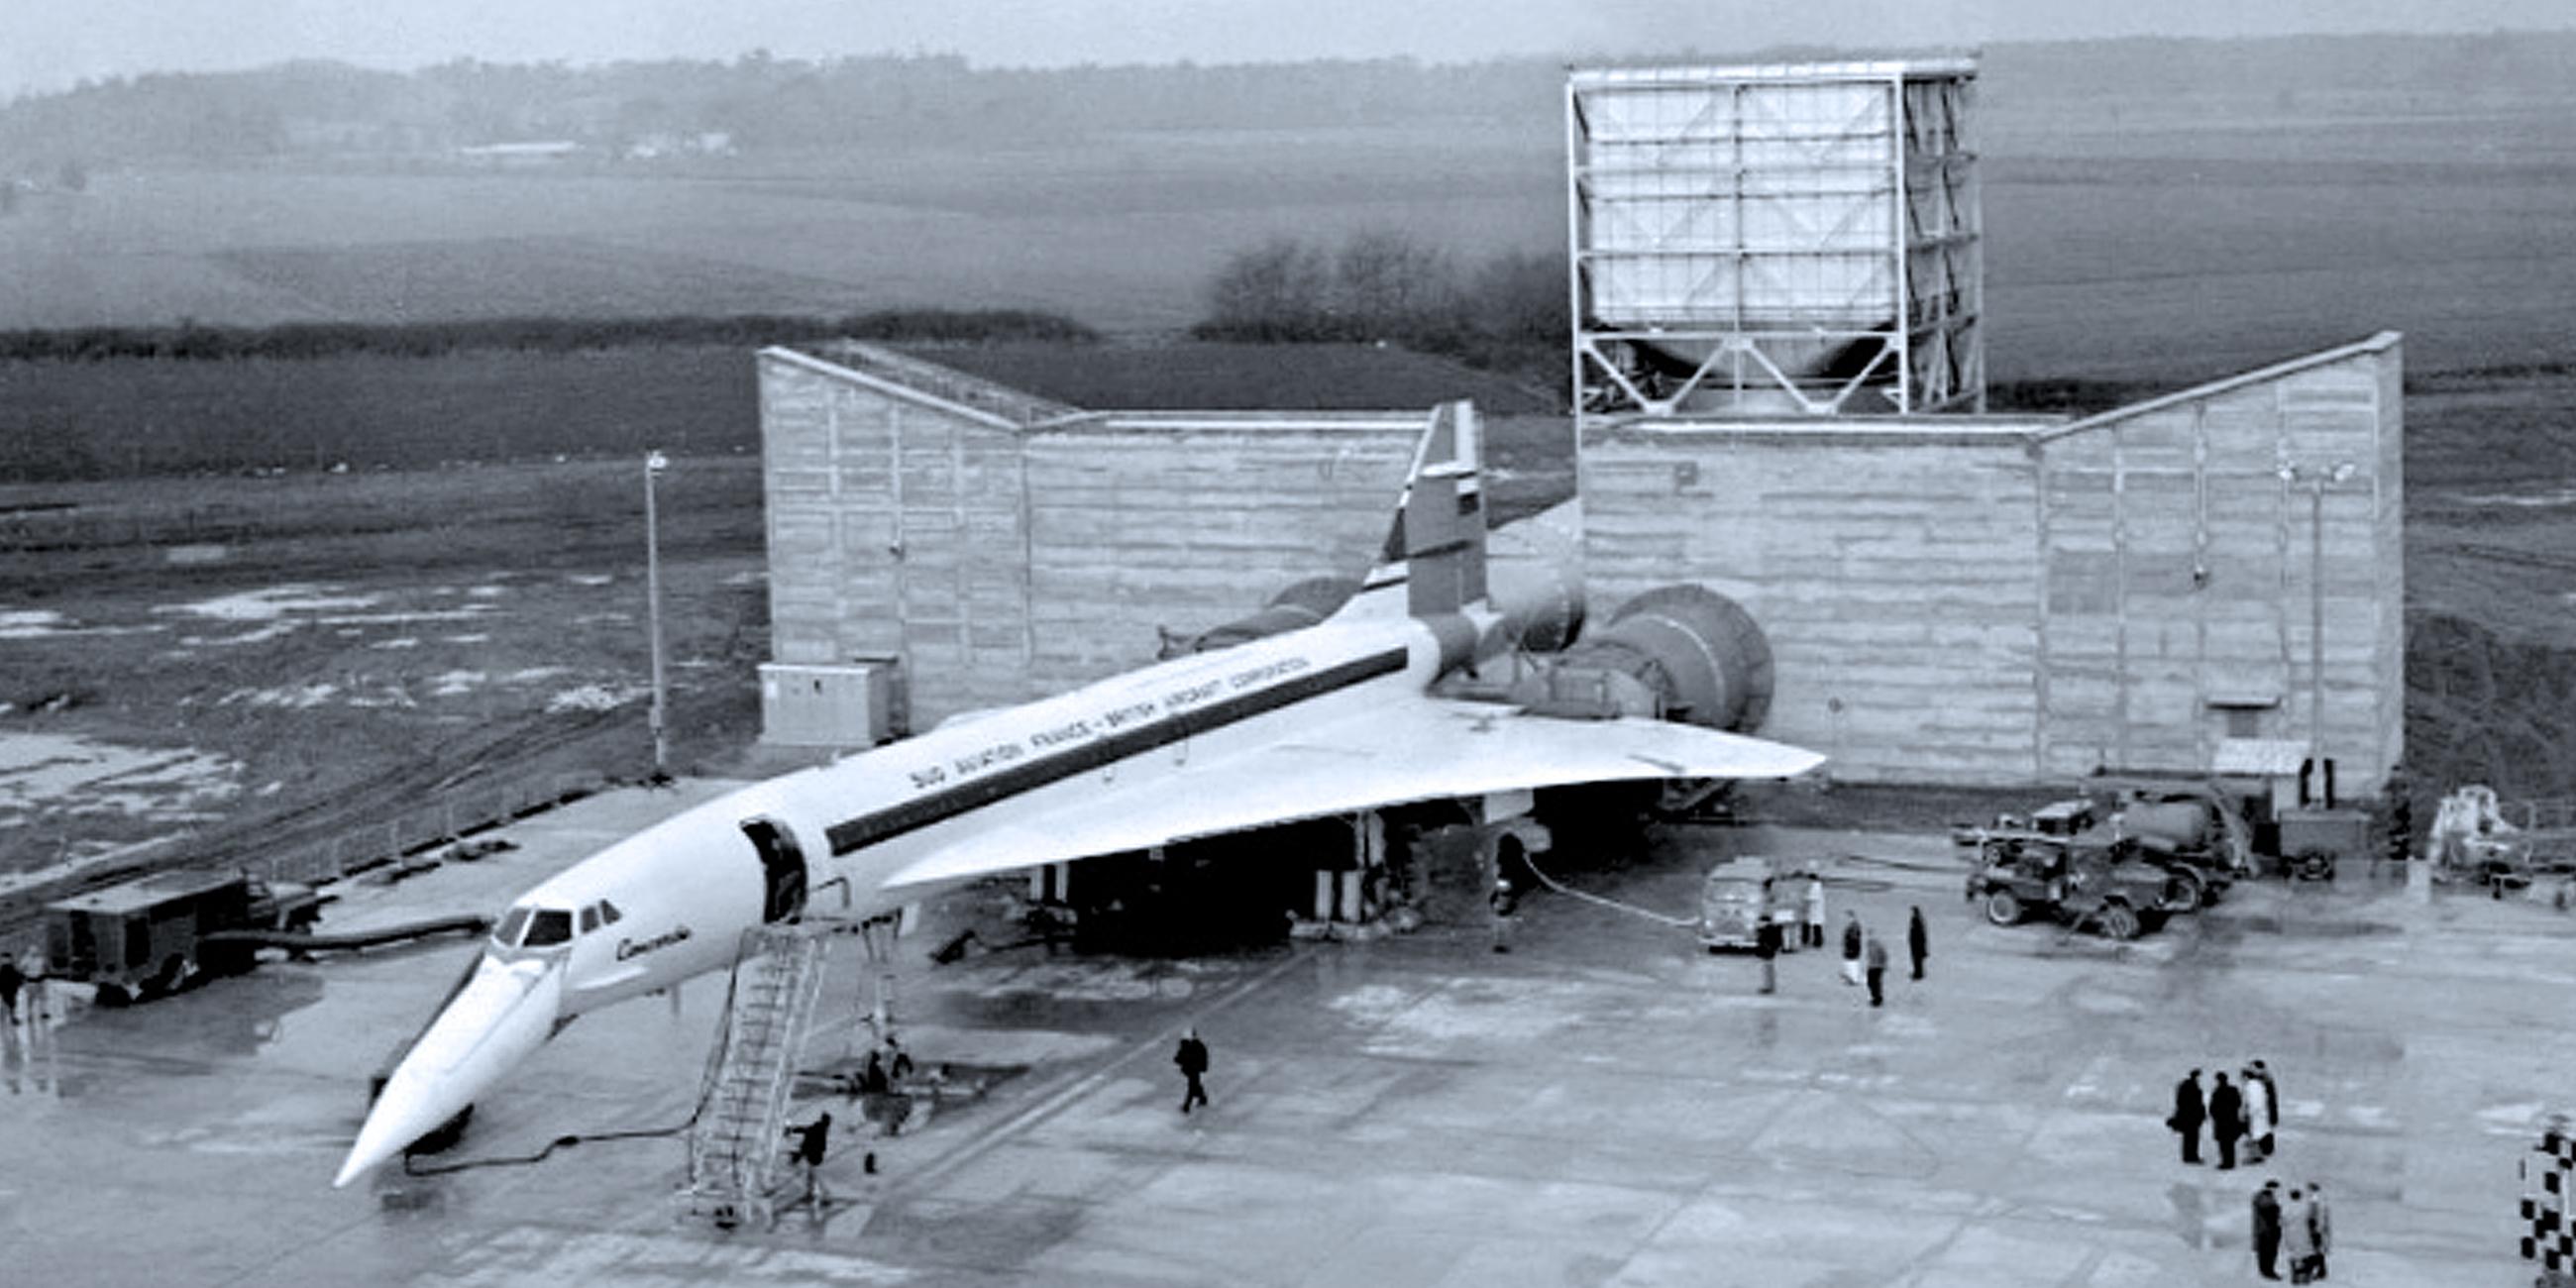 Archiv: Concorde Triebwerktest, aufgenommen am 25.02.1968 auf dem Flughafen Toulouse-Blagnac, Frankreich